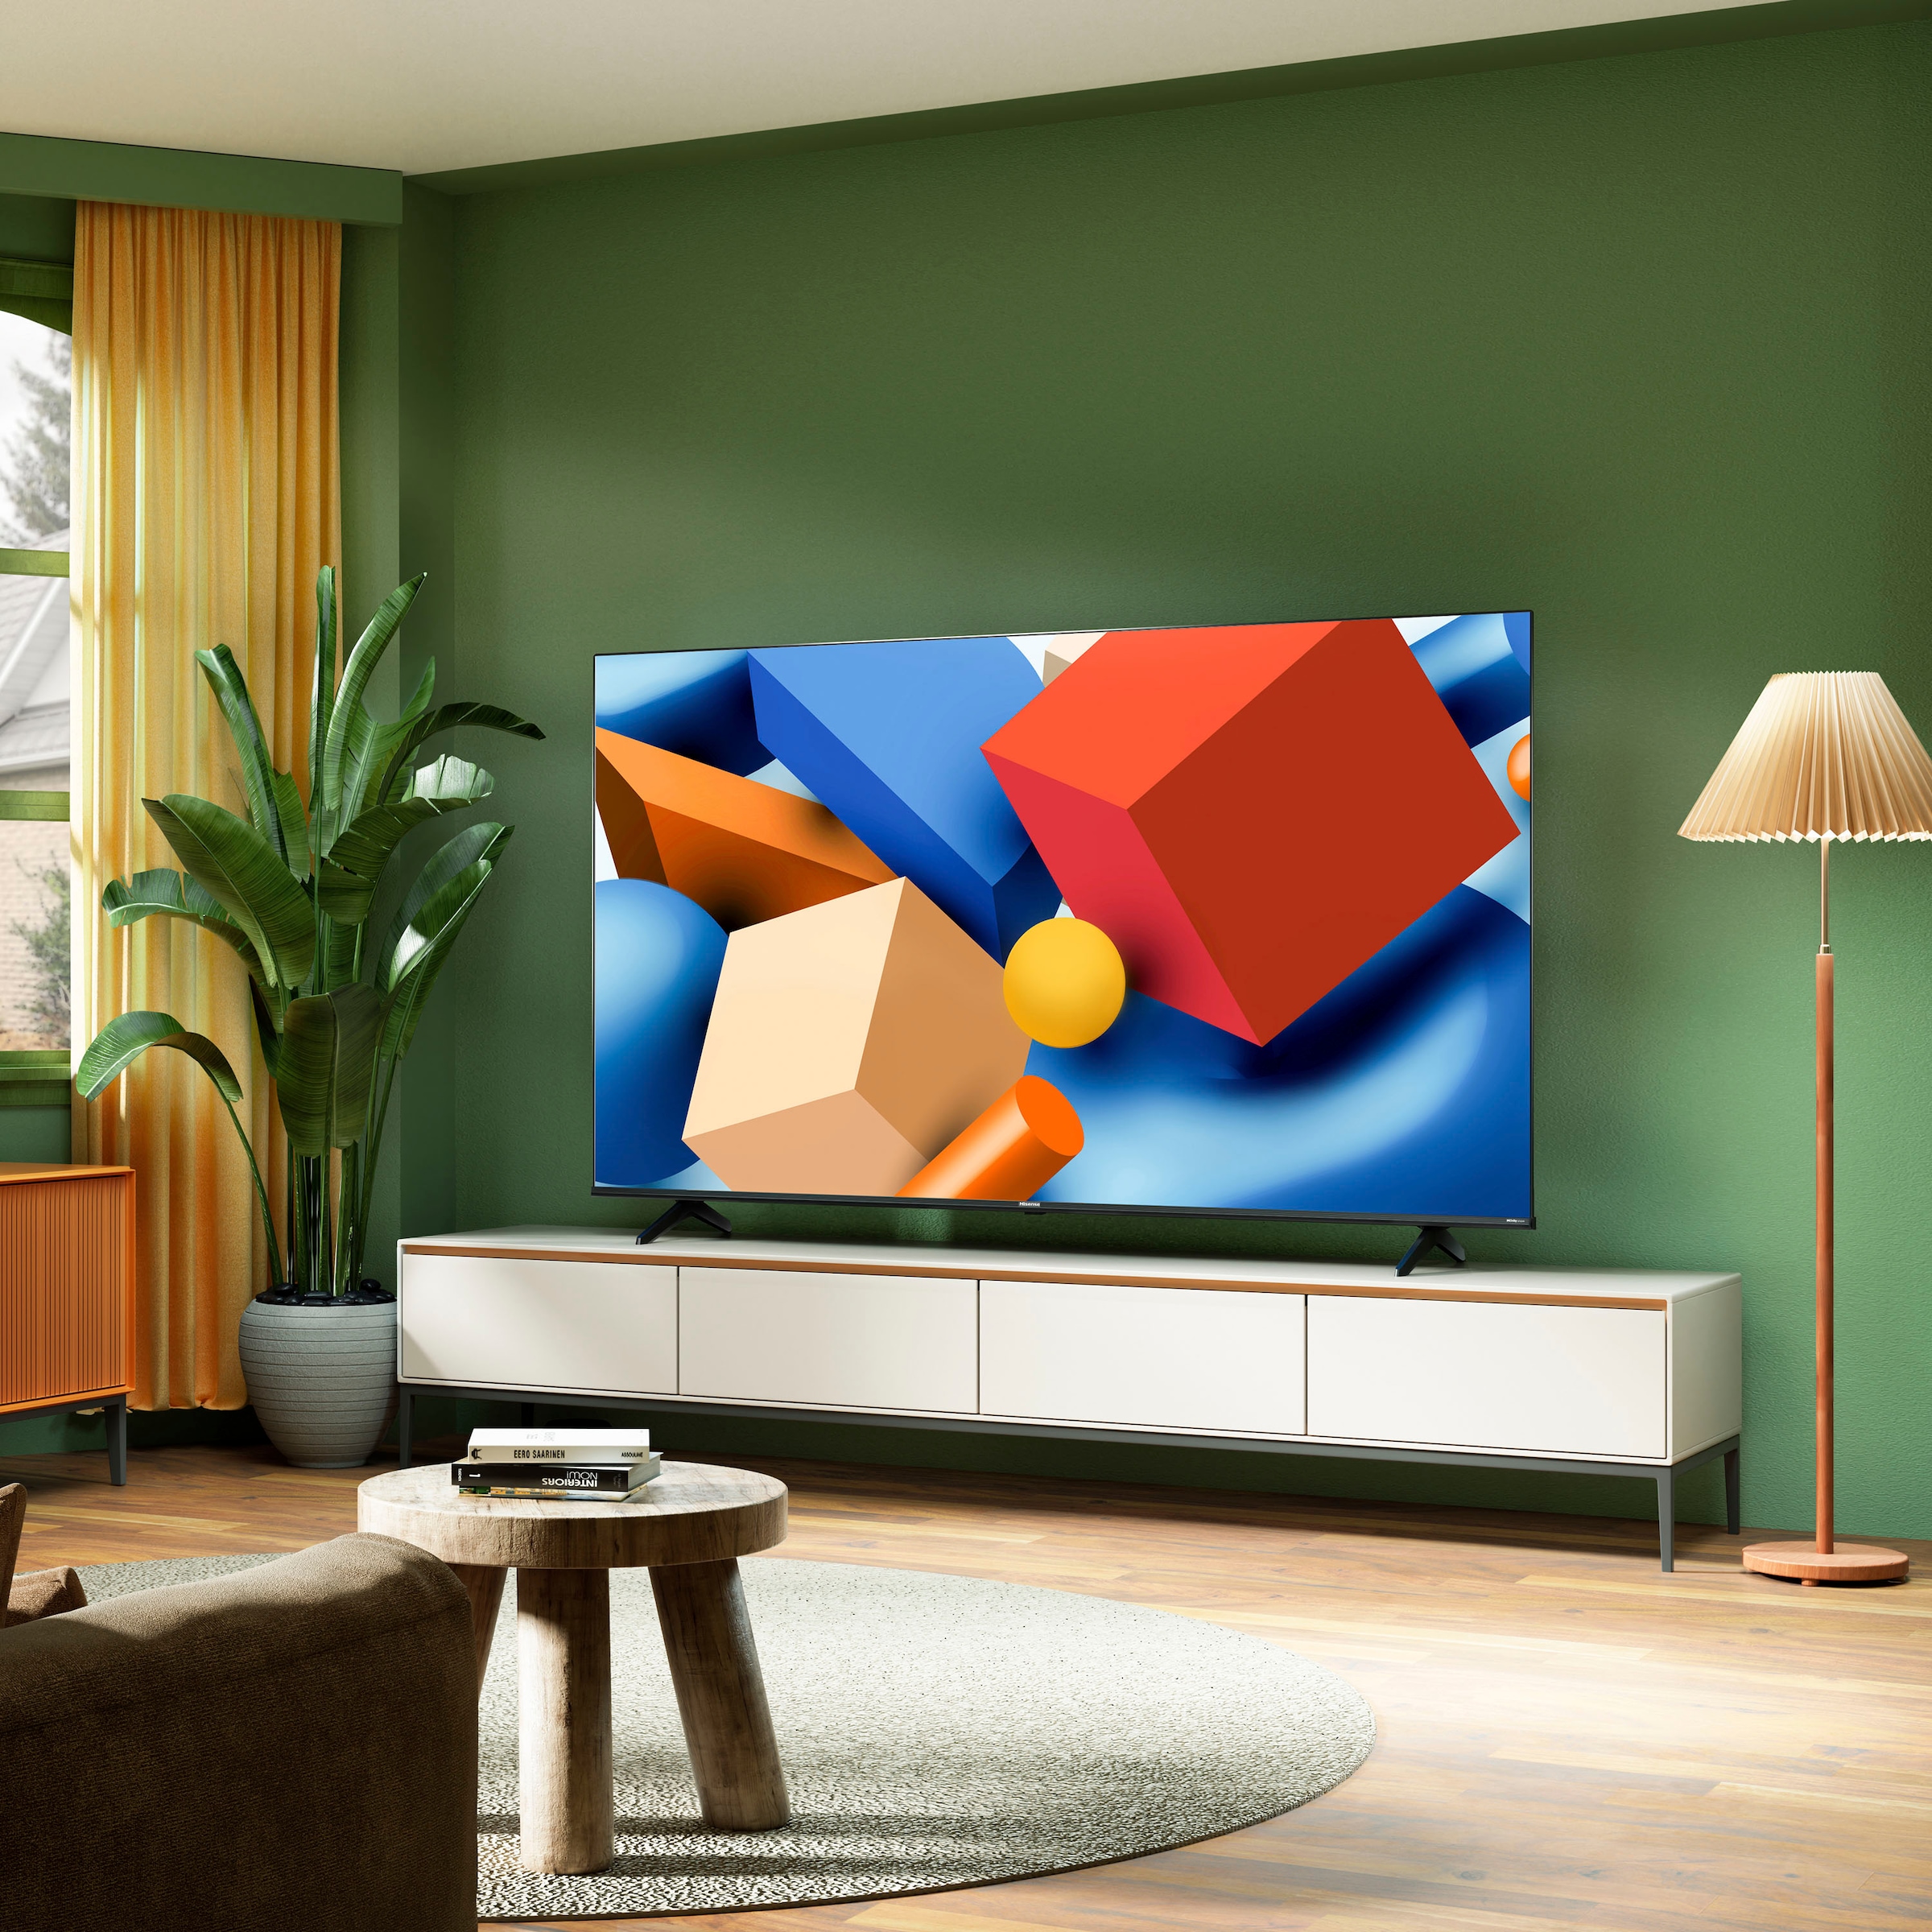 Hisense LED-Fernseher, 146 cm/58 Zoll, 4K Ultra HD, Smart-TV, Smart-TV, Dolby Vision, Triple Tuner DVB-C/S/S2/T/T2